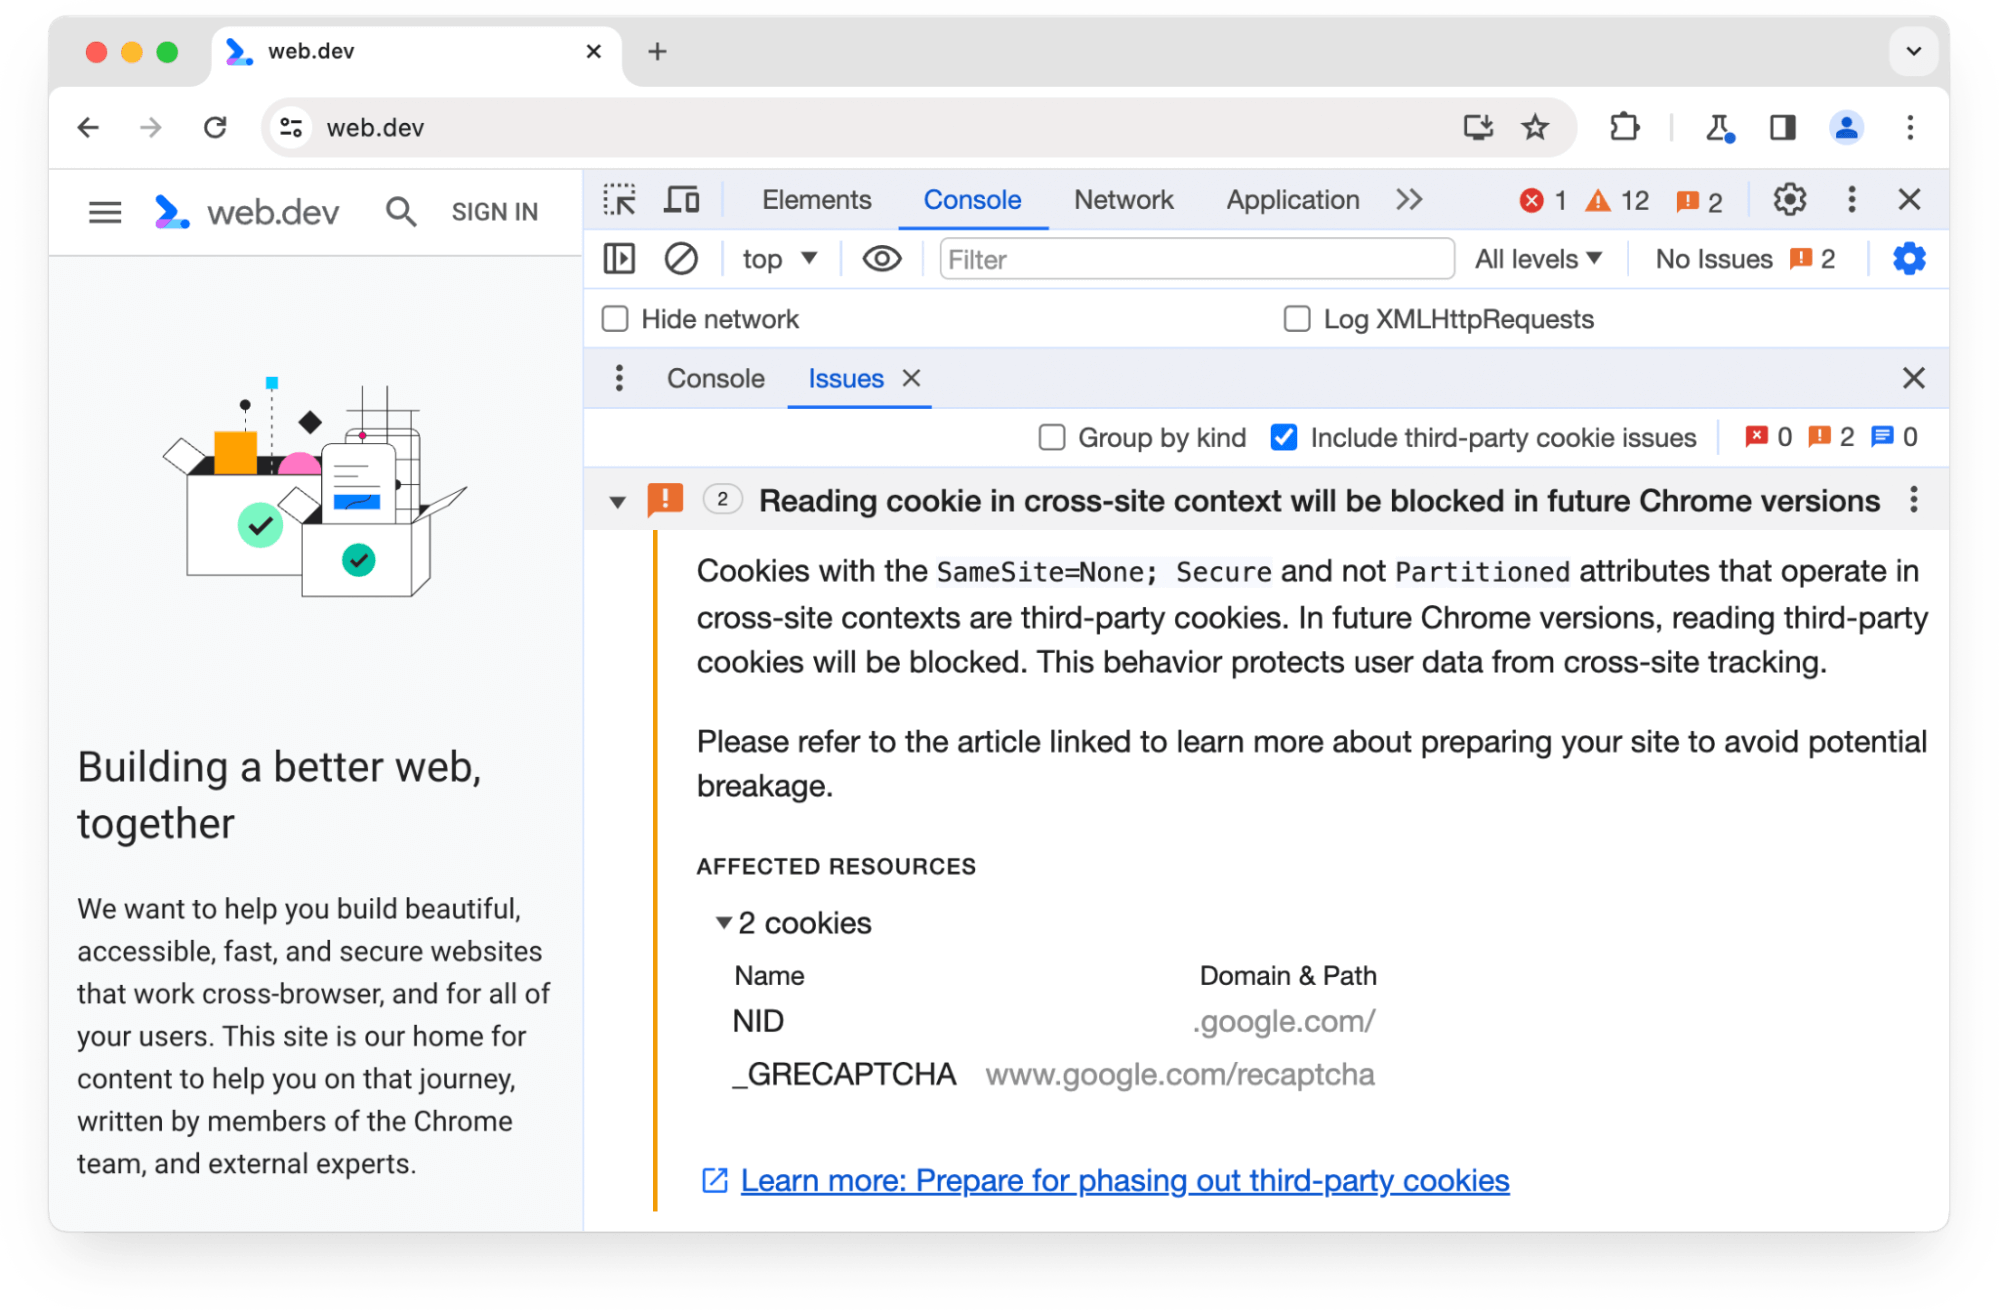 Le panneau des problèmes des outils pour les développeurs Chrome signale au sujet de deux cookies tiers qui seront bloqués dans les futures versions de Chrome.